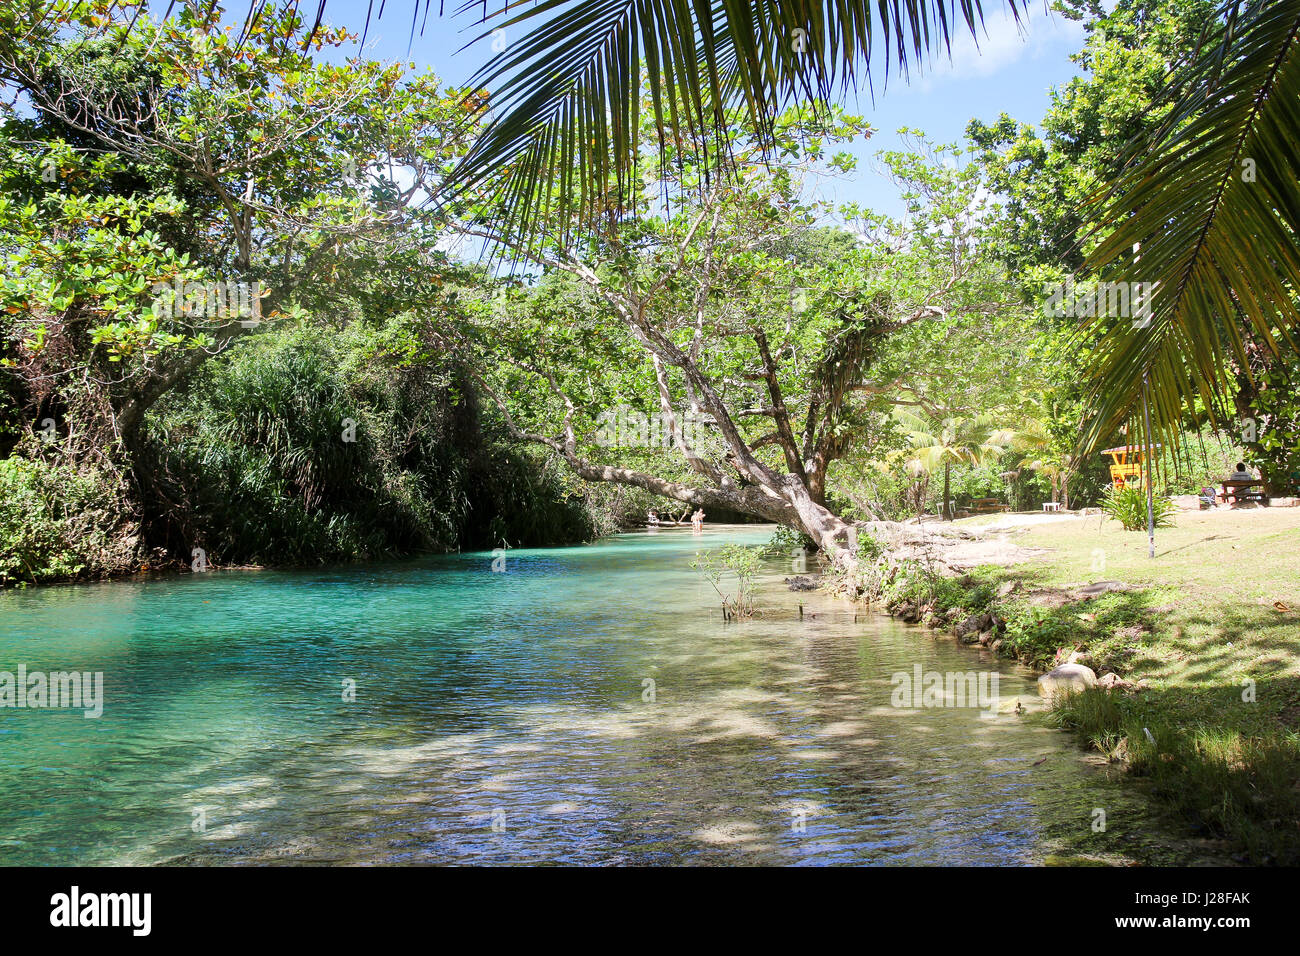 La Jamaïque, Port Antonio, Frenchmans Cove, le bleu turquoise de l'eau sur la rive du lac en Jamaïque Banque D'Images